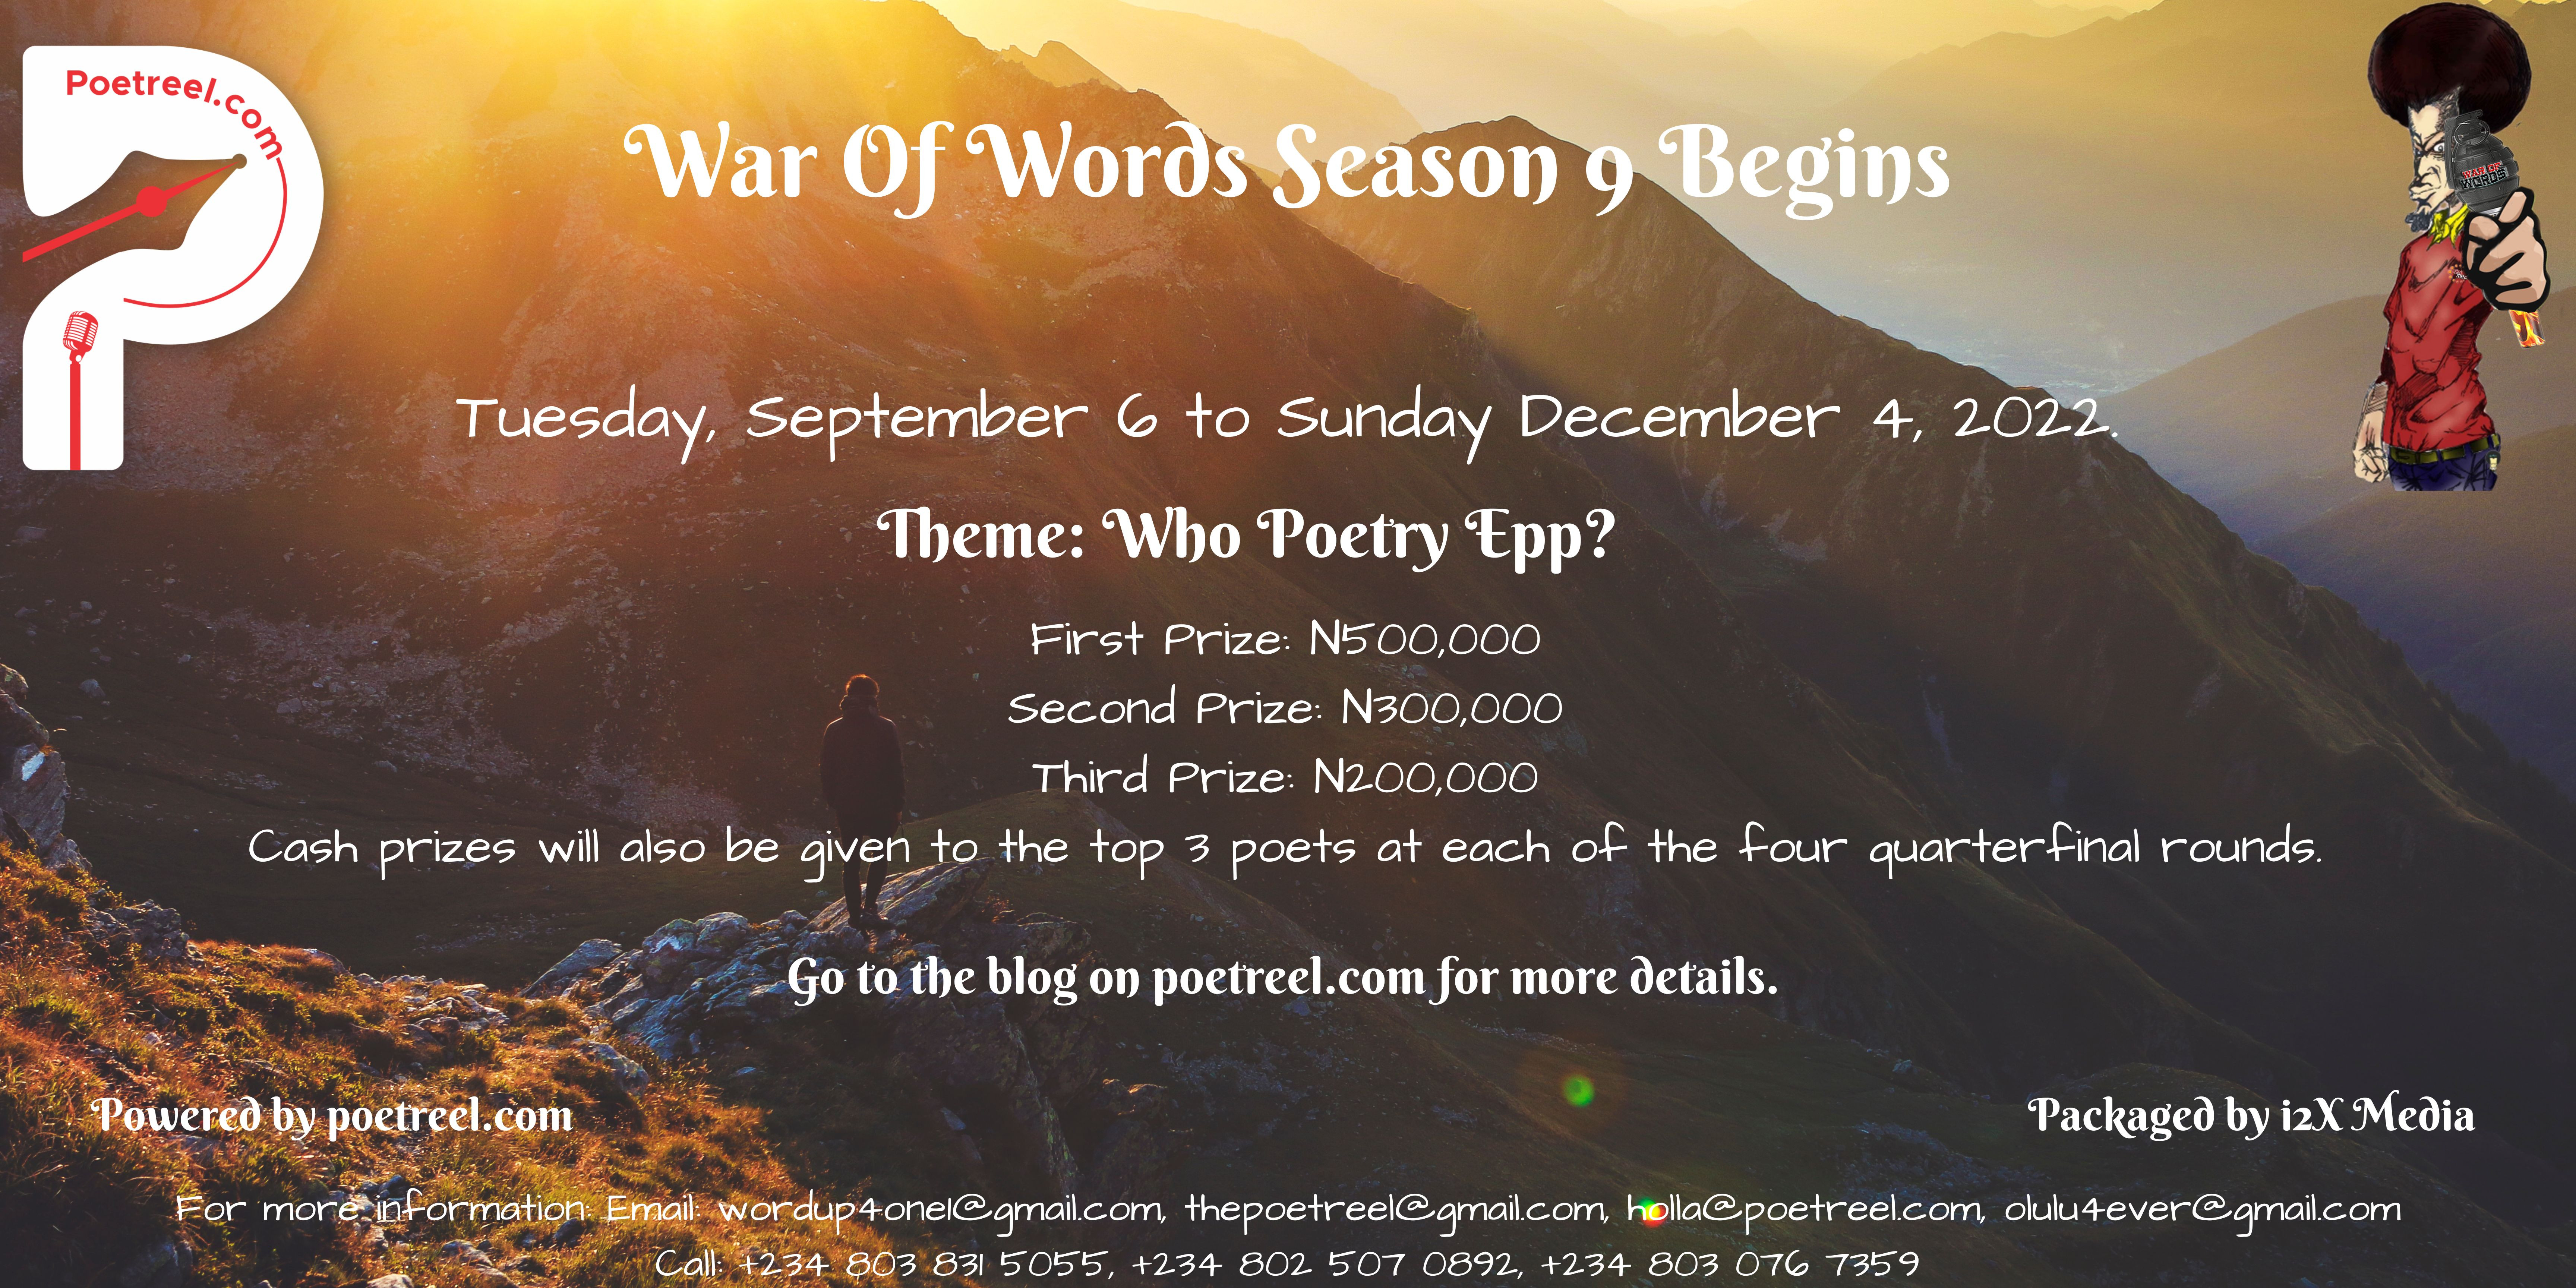 War Of Words Season 9 begins